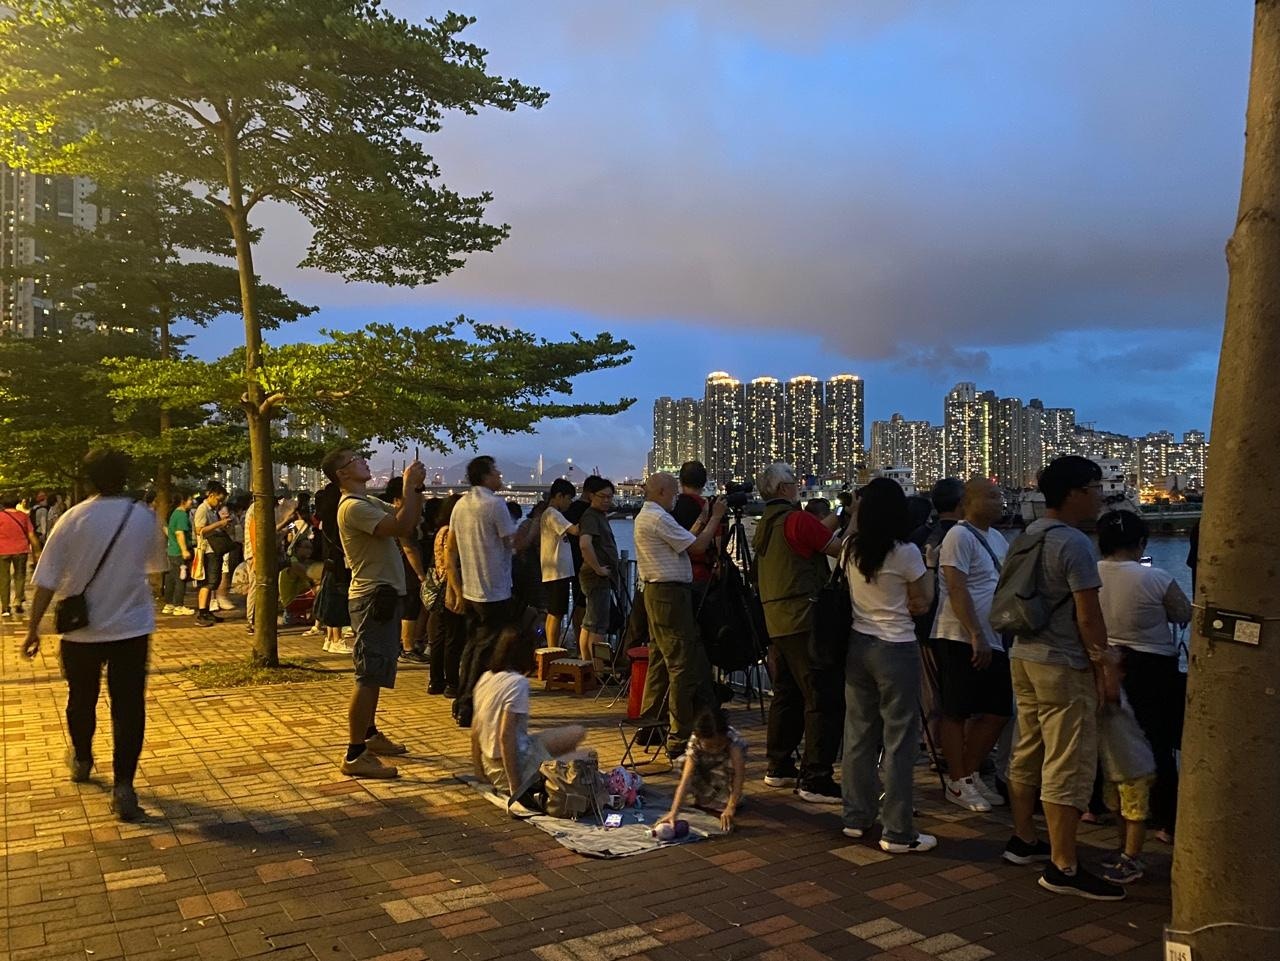 荃湾各界庆祝回归委员会于7月1日晚上8时半在荃湾海滨长廊近海安路（近荃湾西站）举办「无人机汇演贺回归」活动，在晚上7时已有大批市民在等候观看。（余月明摄）